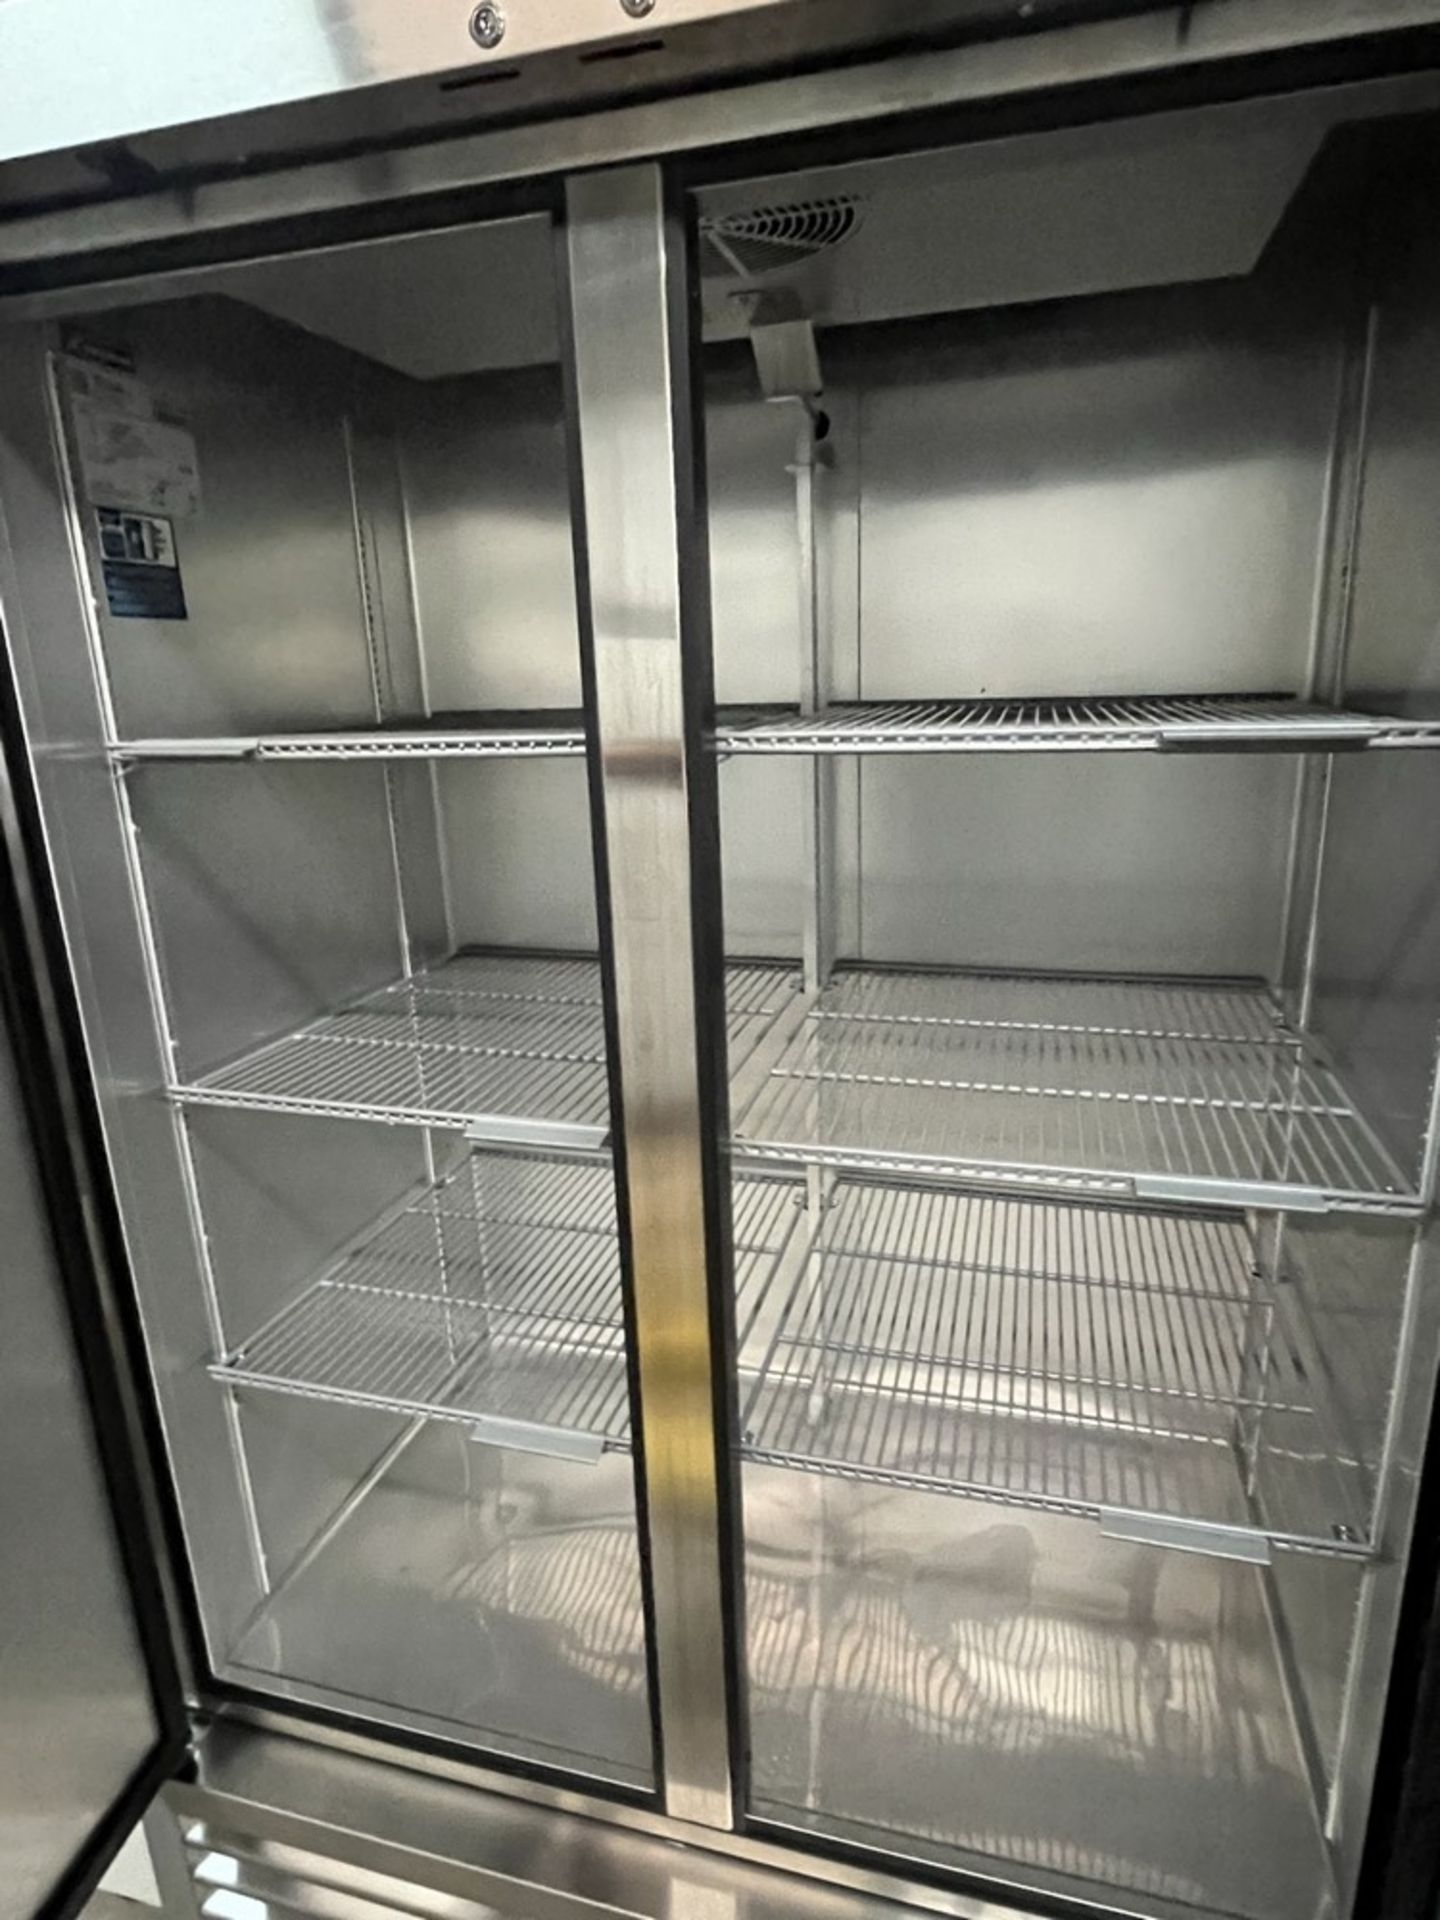 Réfrigérateur TRUE, 2-Portes, mod: T-43-H, 47'' x 83''H, sur Roues - Image 3 of 5